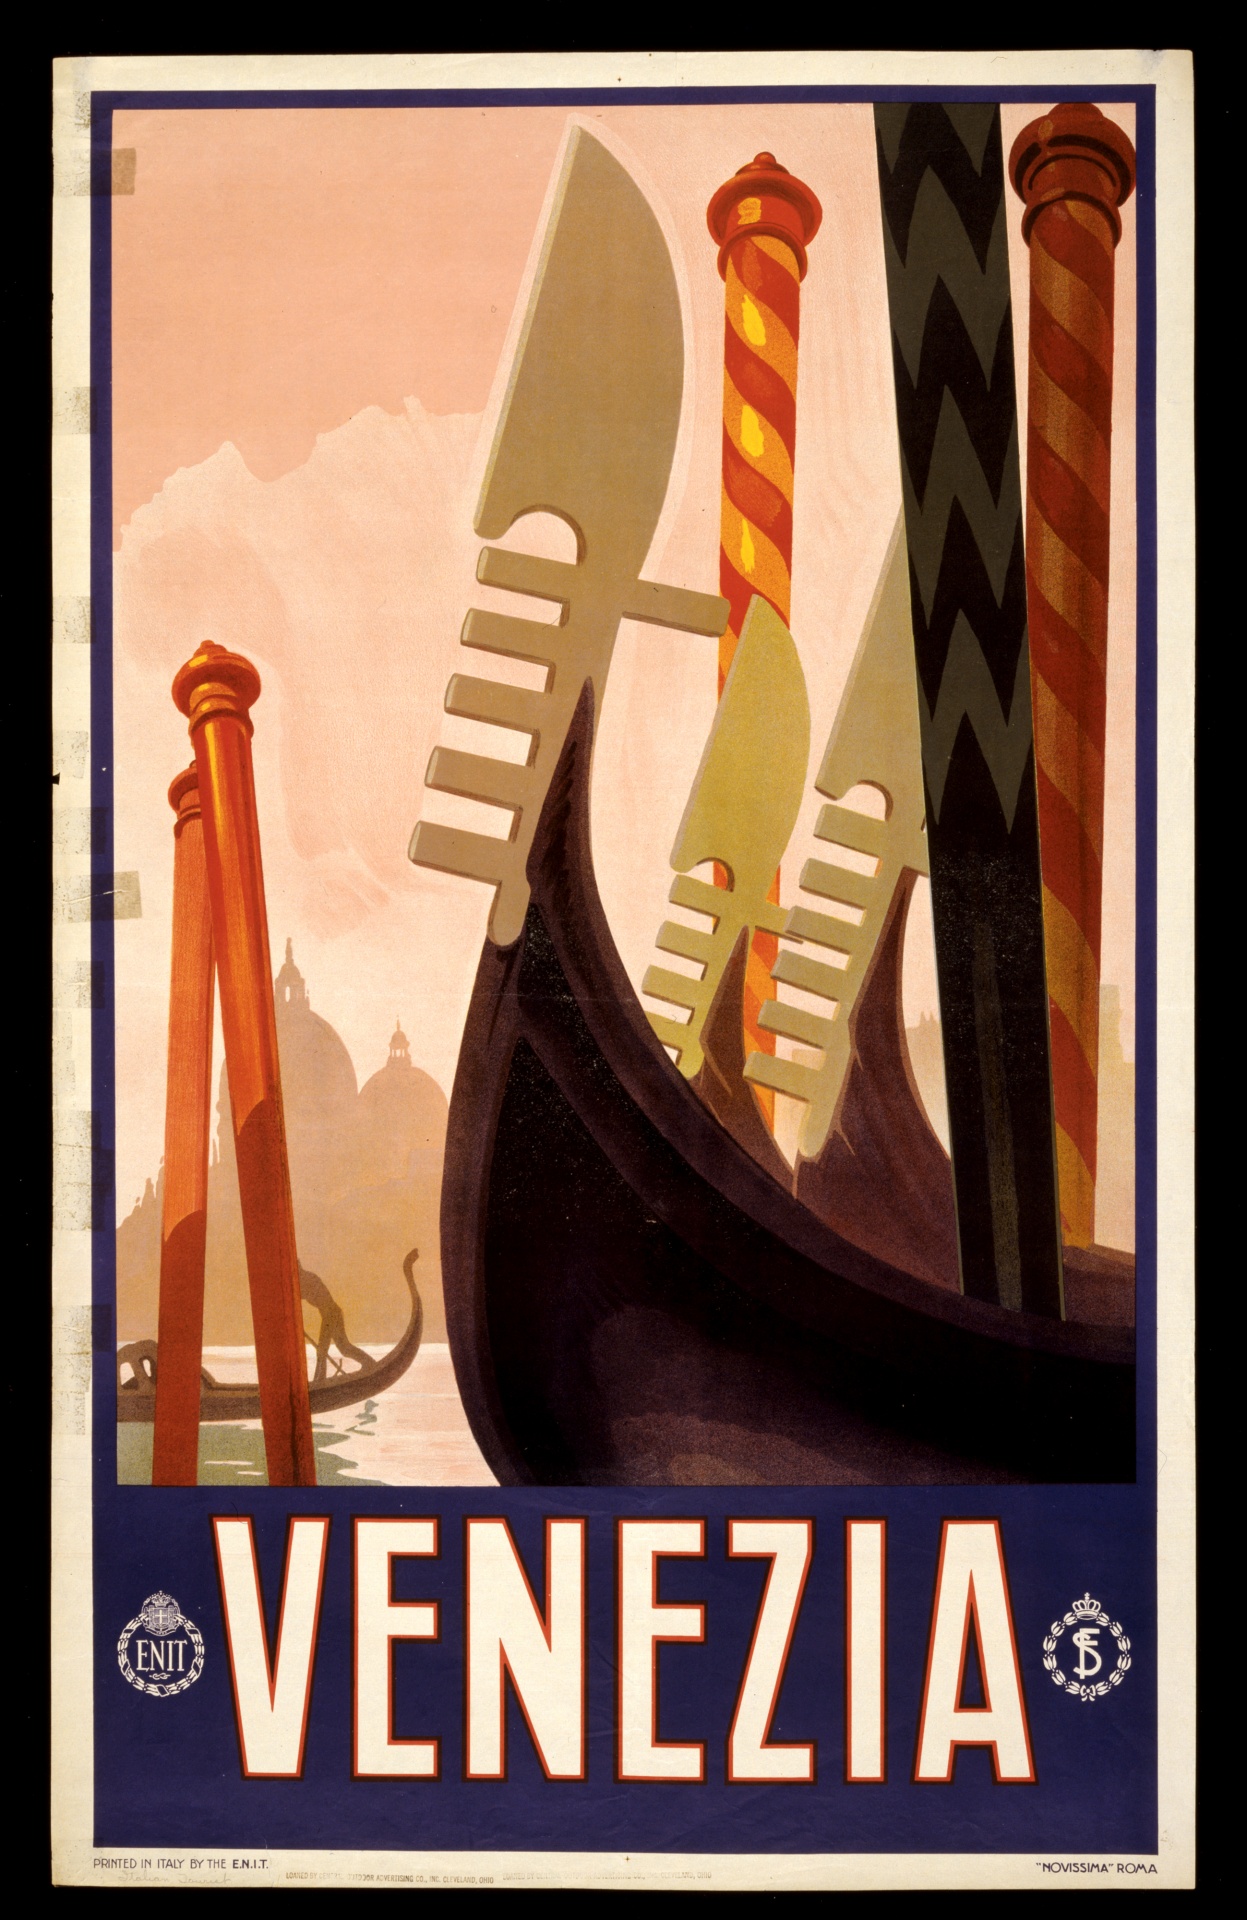 Cartaz do curso de Veneza, Italia